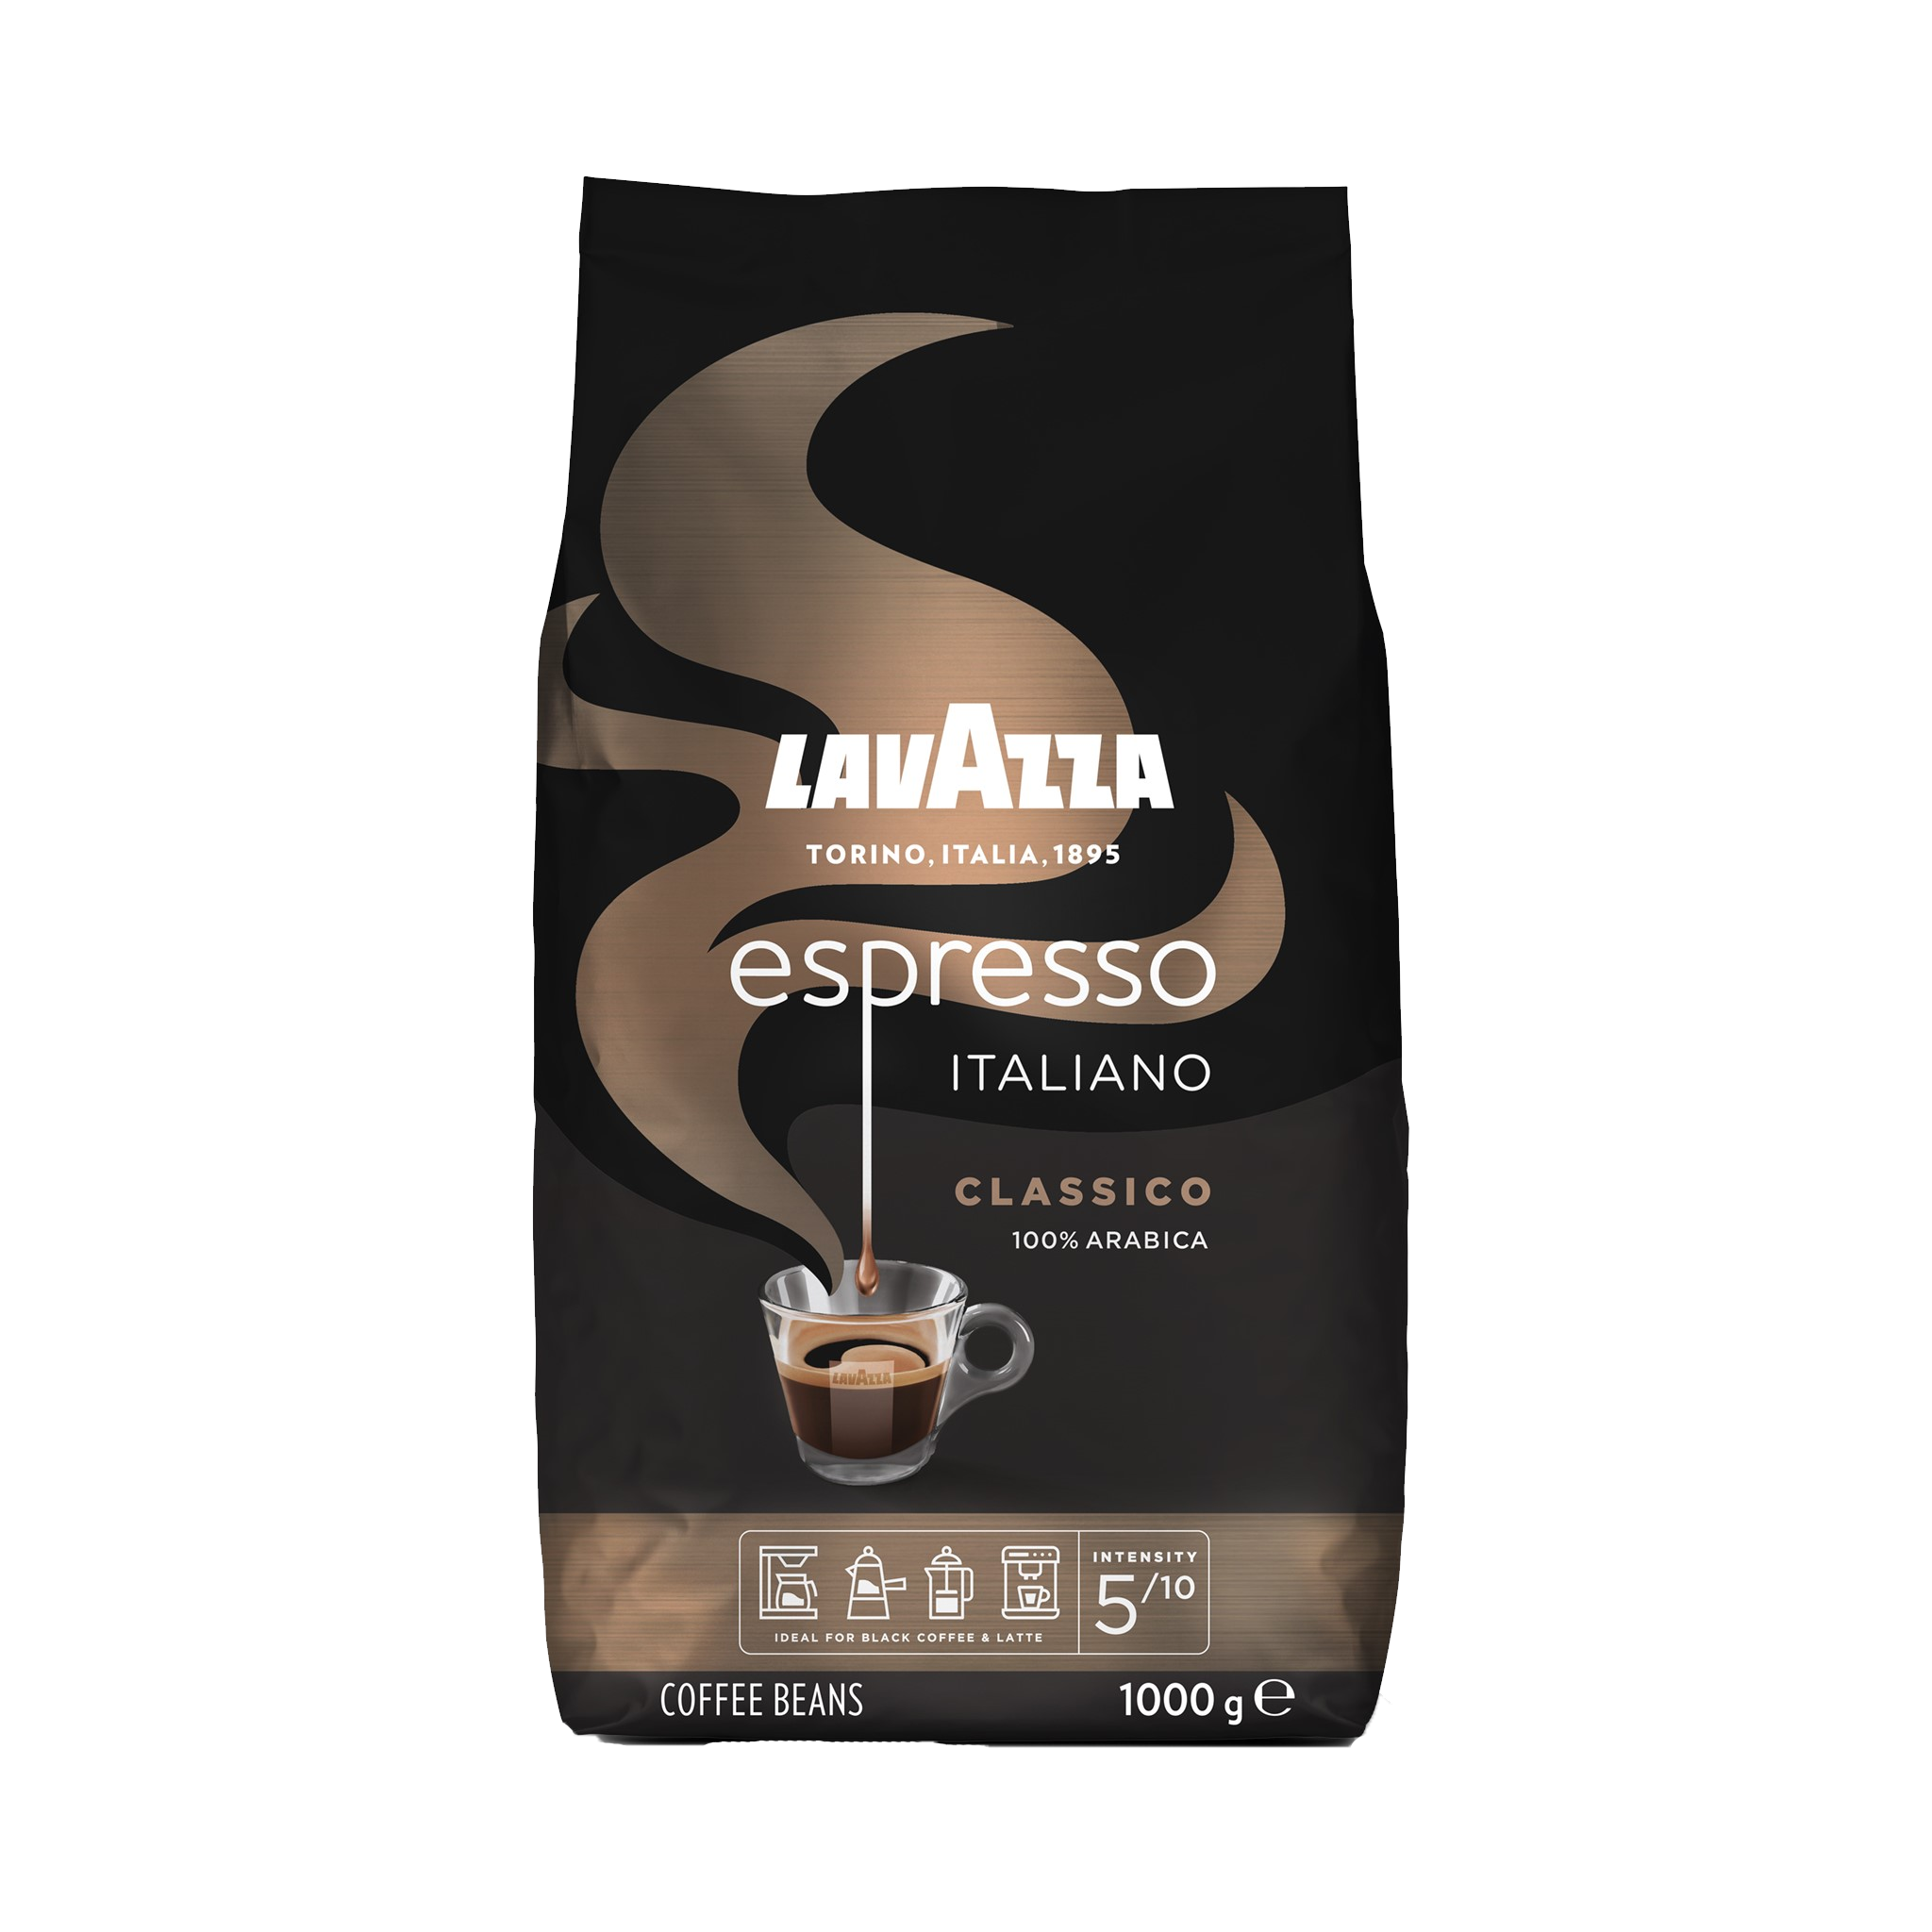 Lavazza Espresso Coffee Beans 1000g